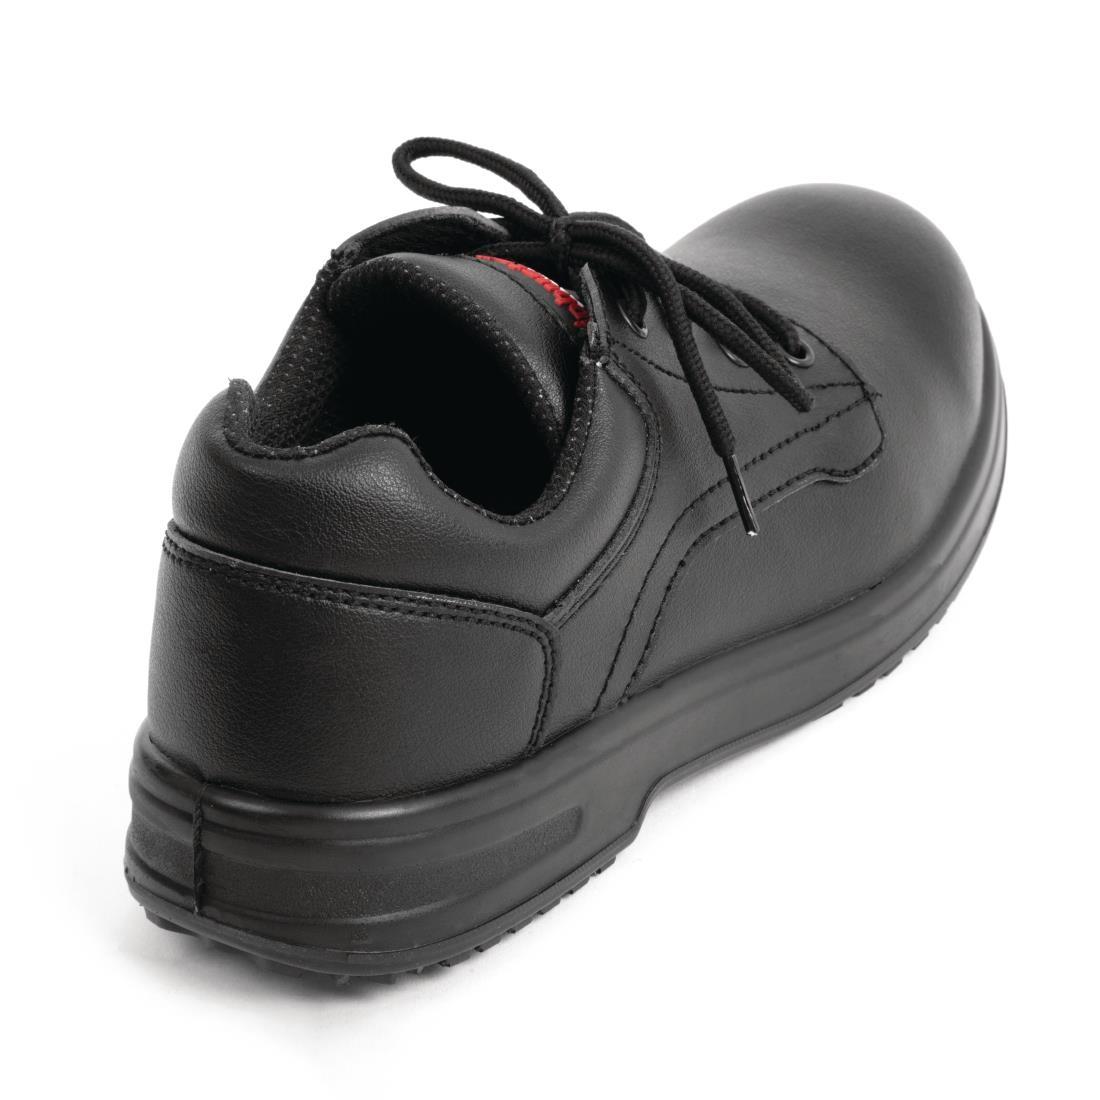 Slipbuster Basic Shoes Slip Resistant Black 47 - BB498-47  - 3